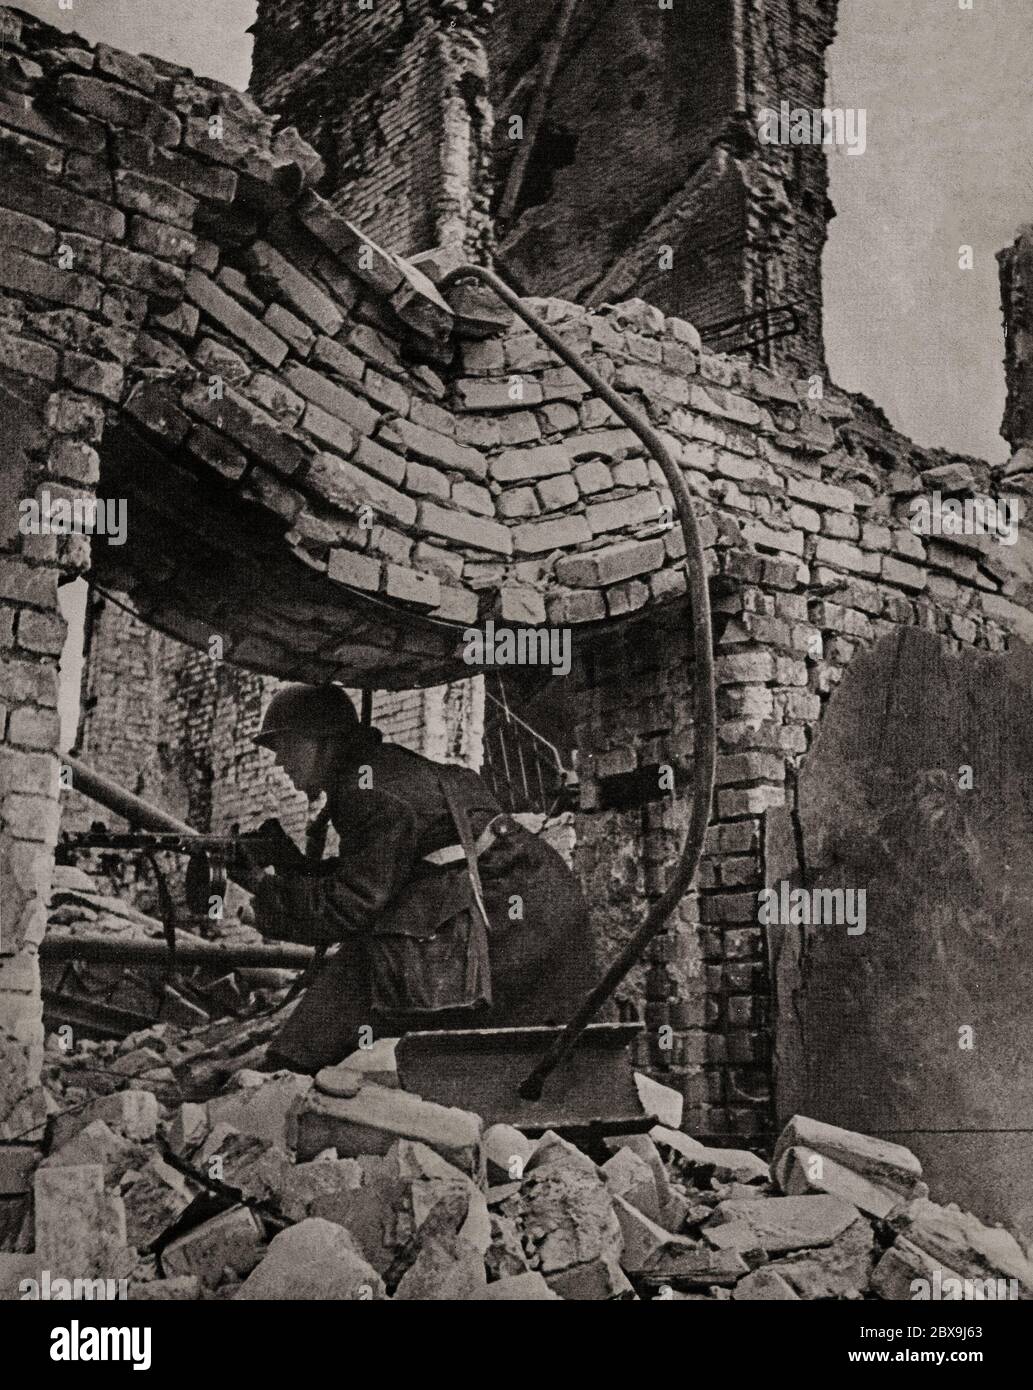 Ein deutscher Soldat im Haus zu Hause kämpfen während der Schlacht von Stalingrad (1942-1943), als Deutschland und seine Verbündeten kämpften die Sowjetunion für die Kontrolle der Stadt Stalingrad (jetzt Wolgograd) in Südrussland. Sie war geprägt von heftigen Nahkampfkämpfen und direkten Angriffen auf Zivilisten bei Luftangriffen während einer der blutigsten Schlachten in der Geschichte der Kriegsführung, mit geschätzten 2 Millionen Todesopfern. Stockfoto